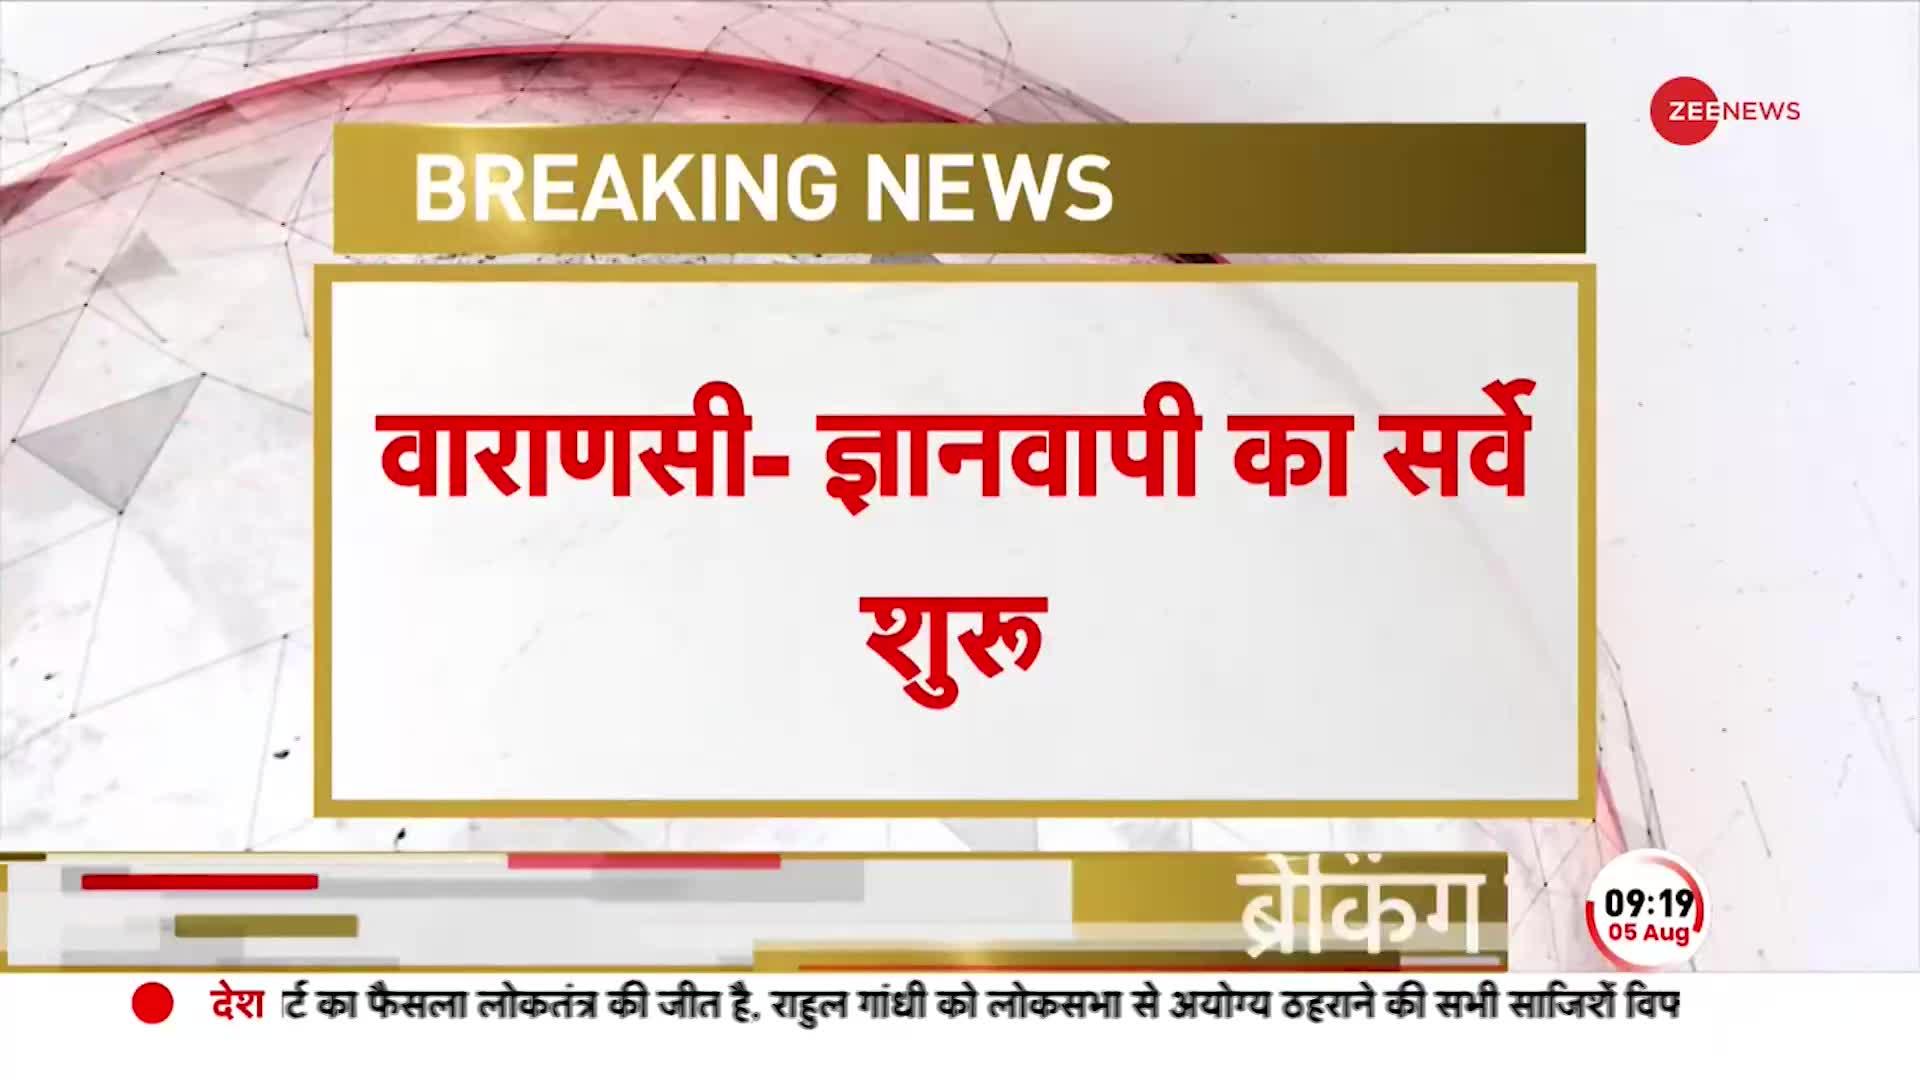 Breaking News: ज्ञानवापी में ASI का सर्वे जारी, आज परिसर में हिंदू और मुस्लिम दोनों पक्ष मौजूद